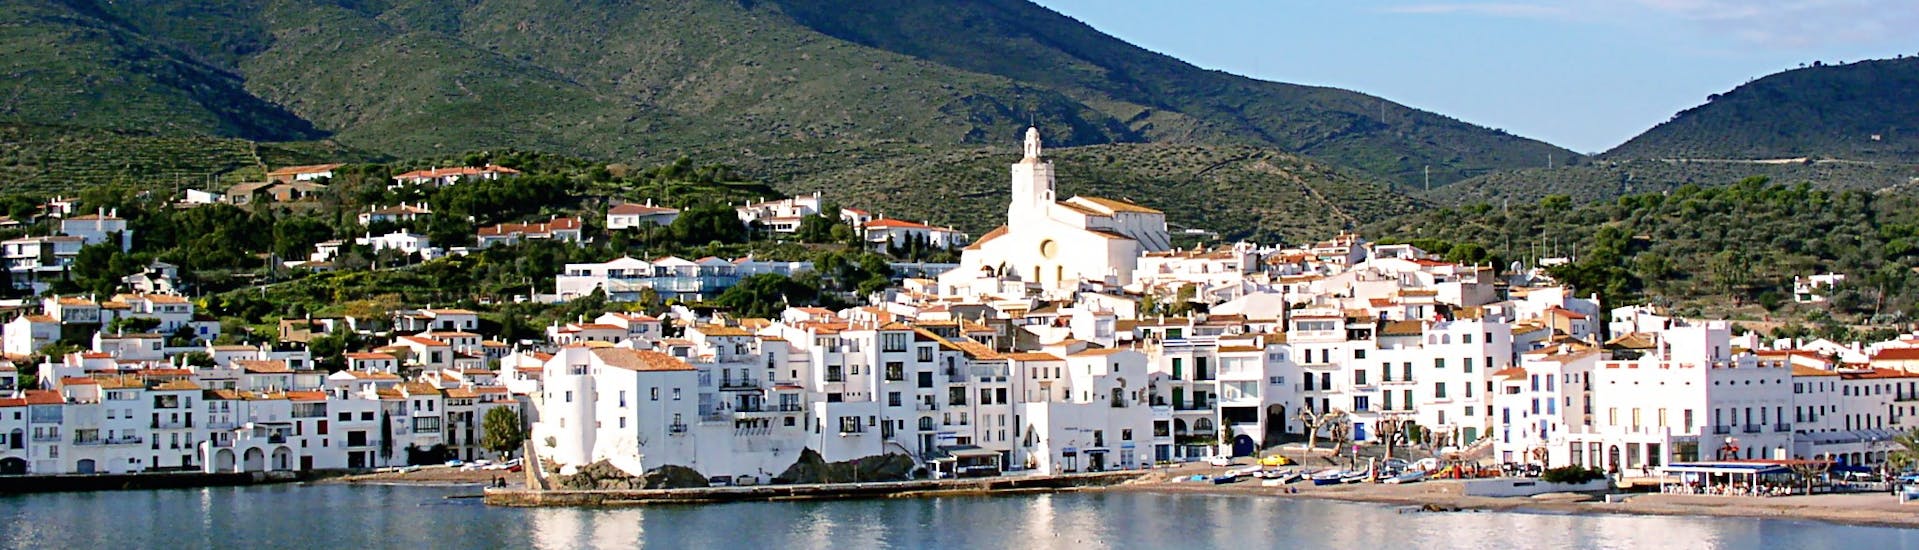 Uitzicht op Cadaqués tijdens een Catamarantocht van Roses naar Cap de Creus met zwemmen met Don Pancho.